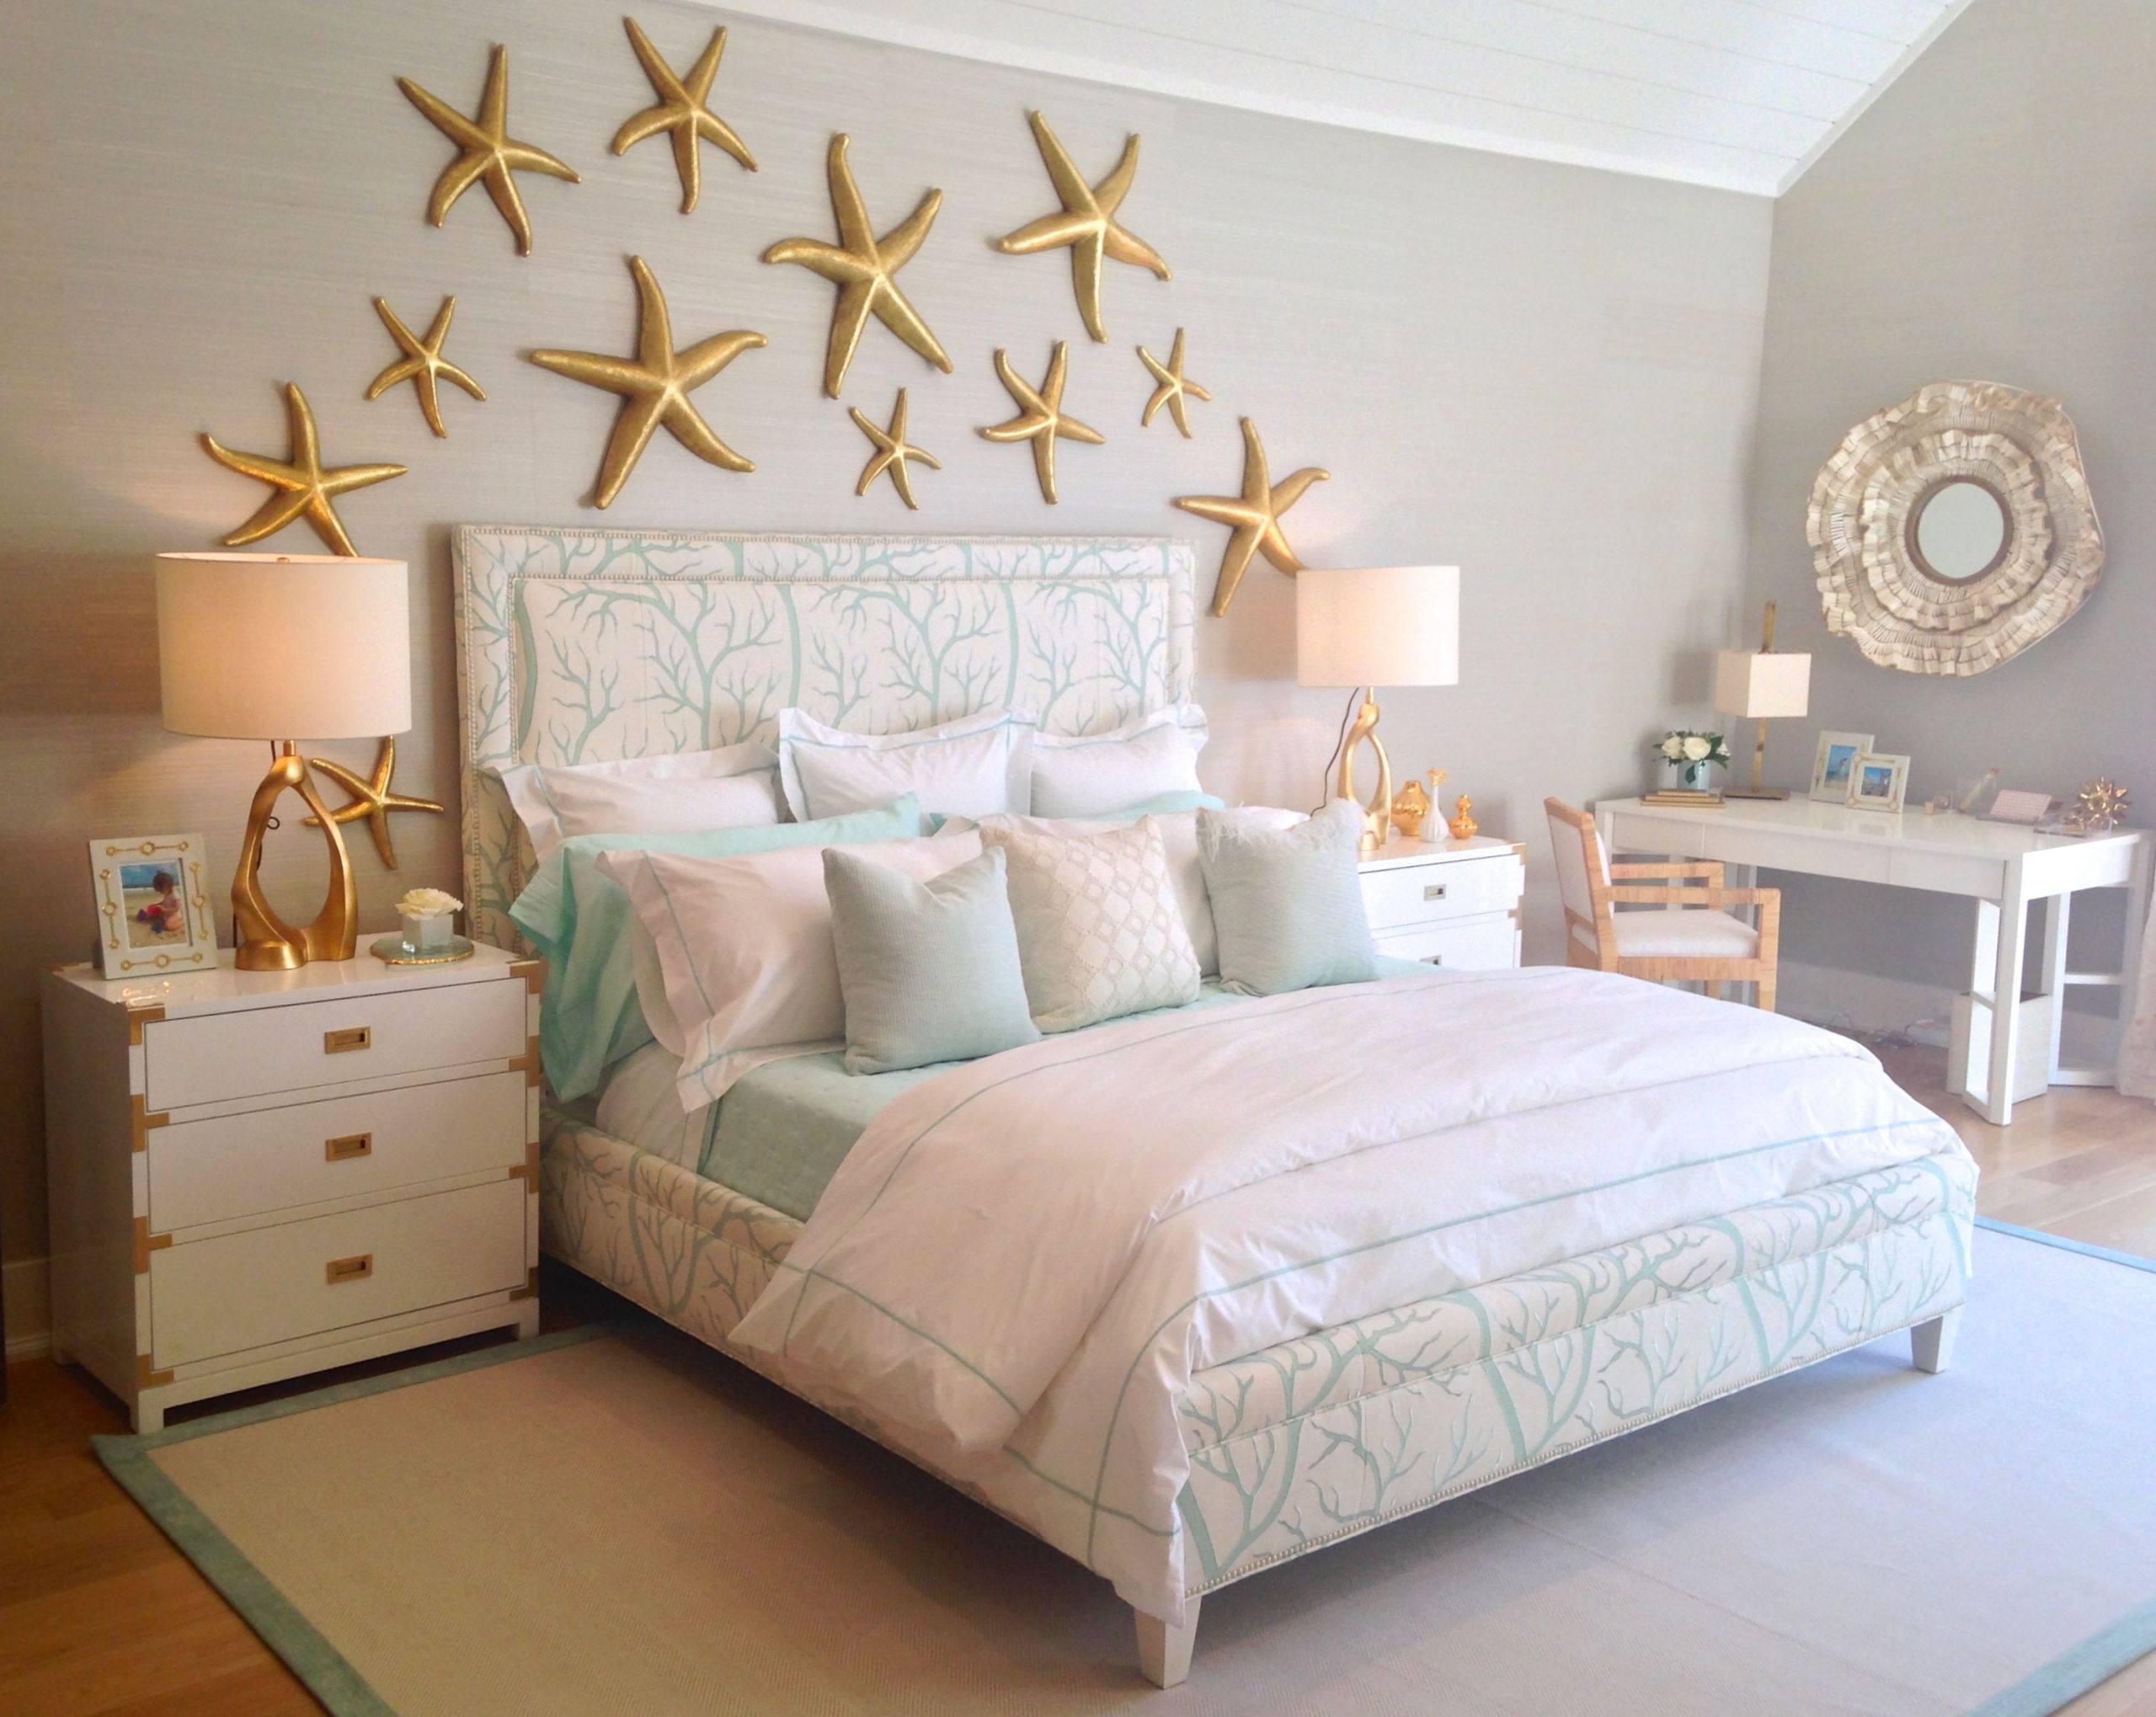 Ocean Bedroom Decorations
 bedroom decor turquoise bedroom ideas in 2019